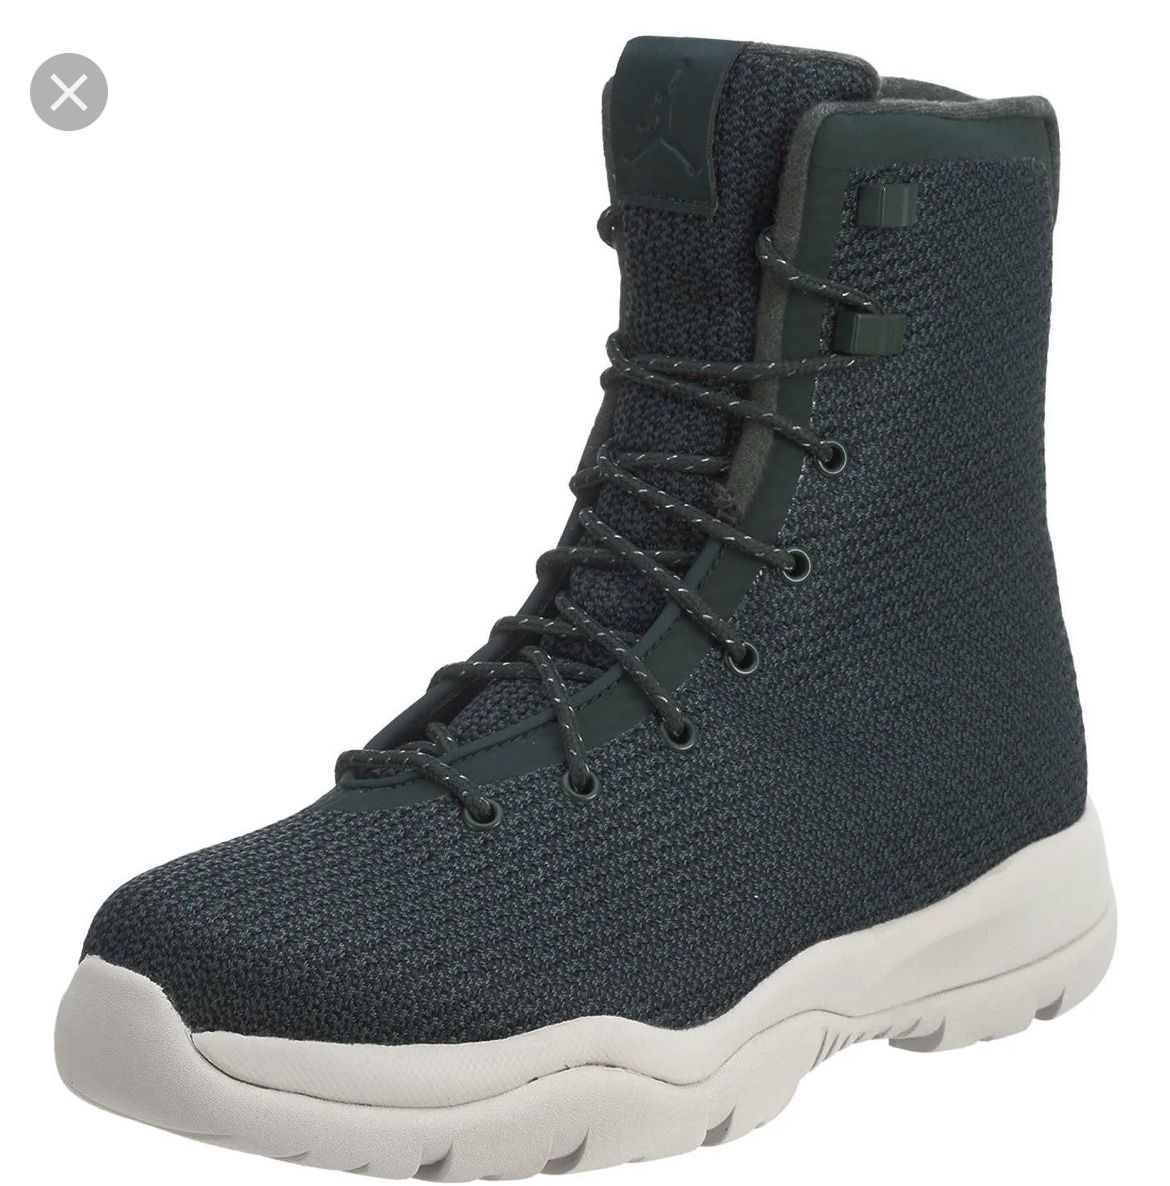 Jordan Future Boot in Grove Green size 10.5